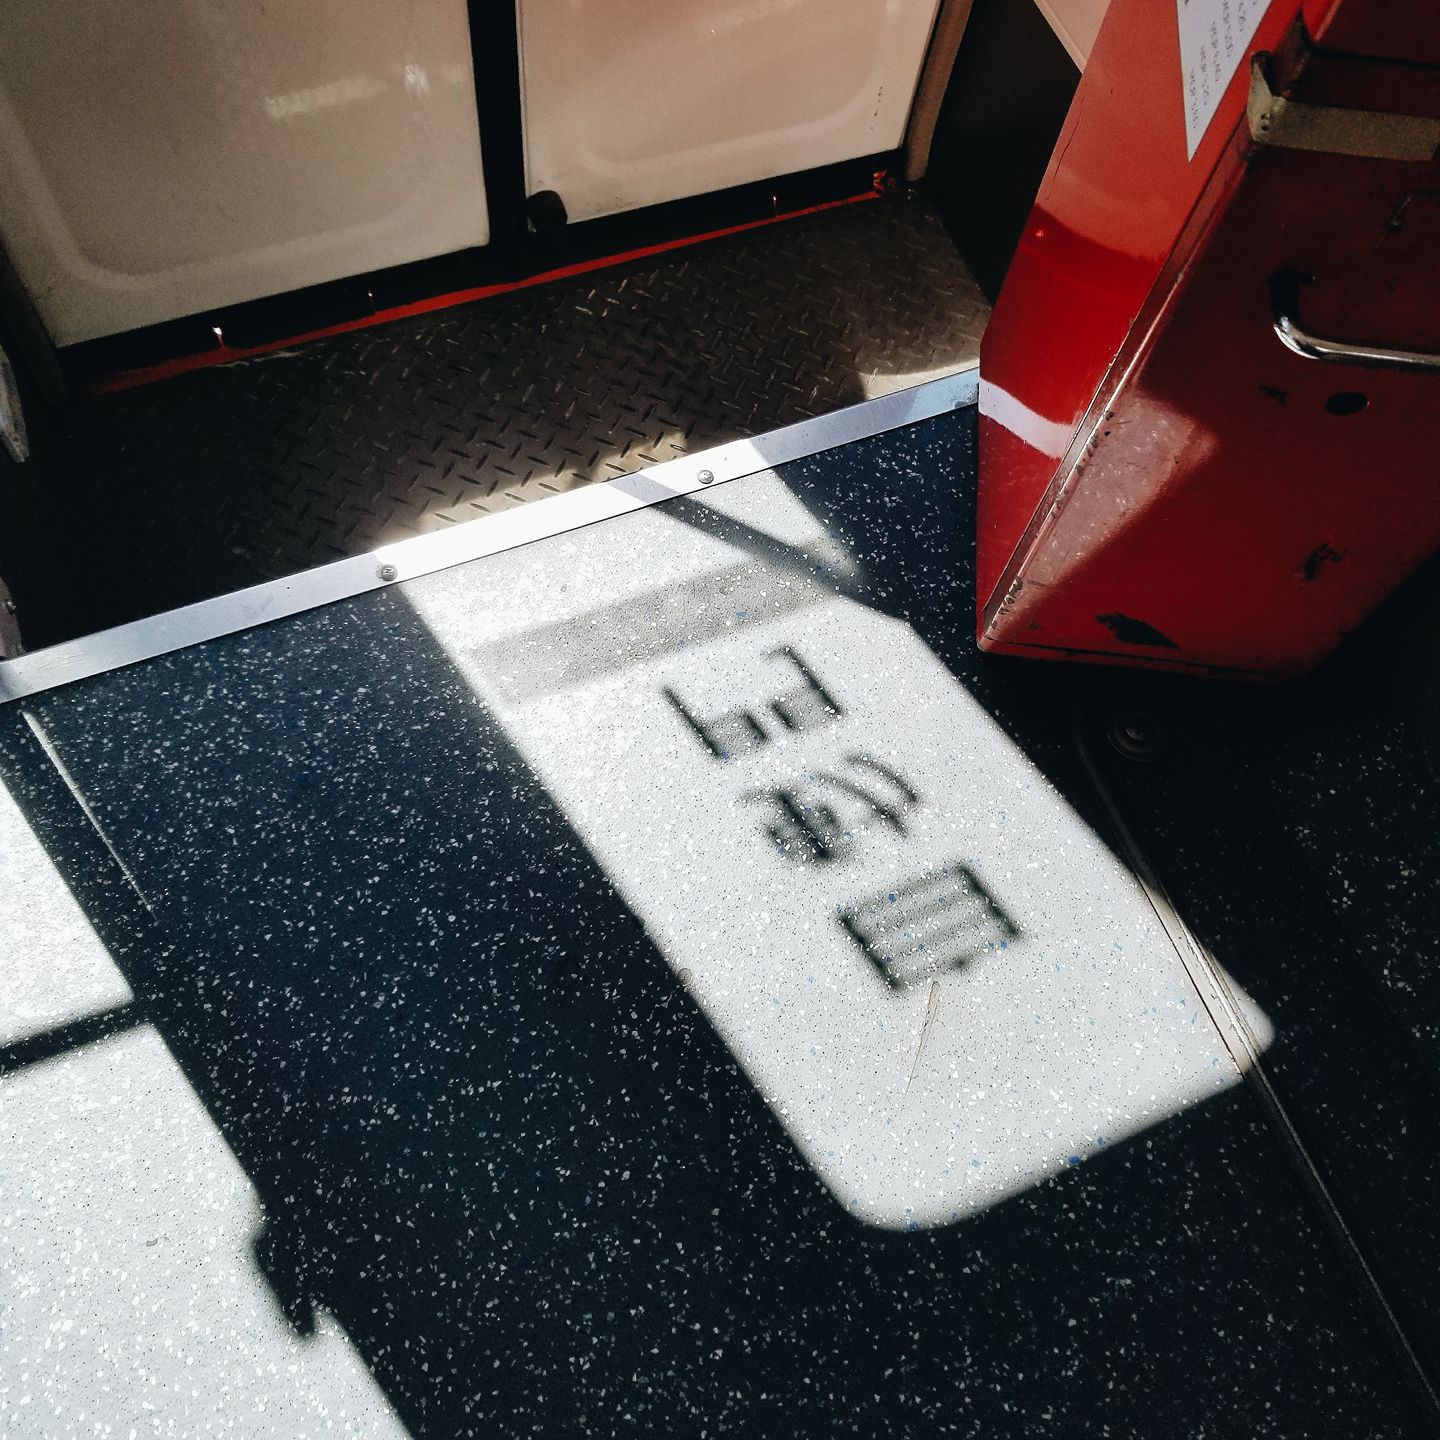 日光照射下 巴士車廂內的「自動門」影子